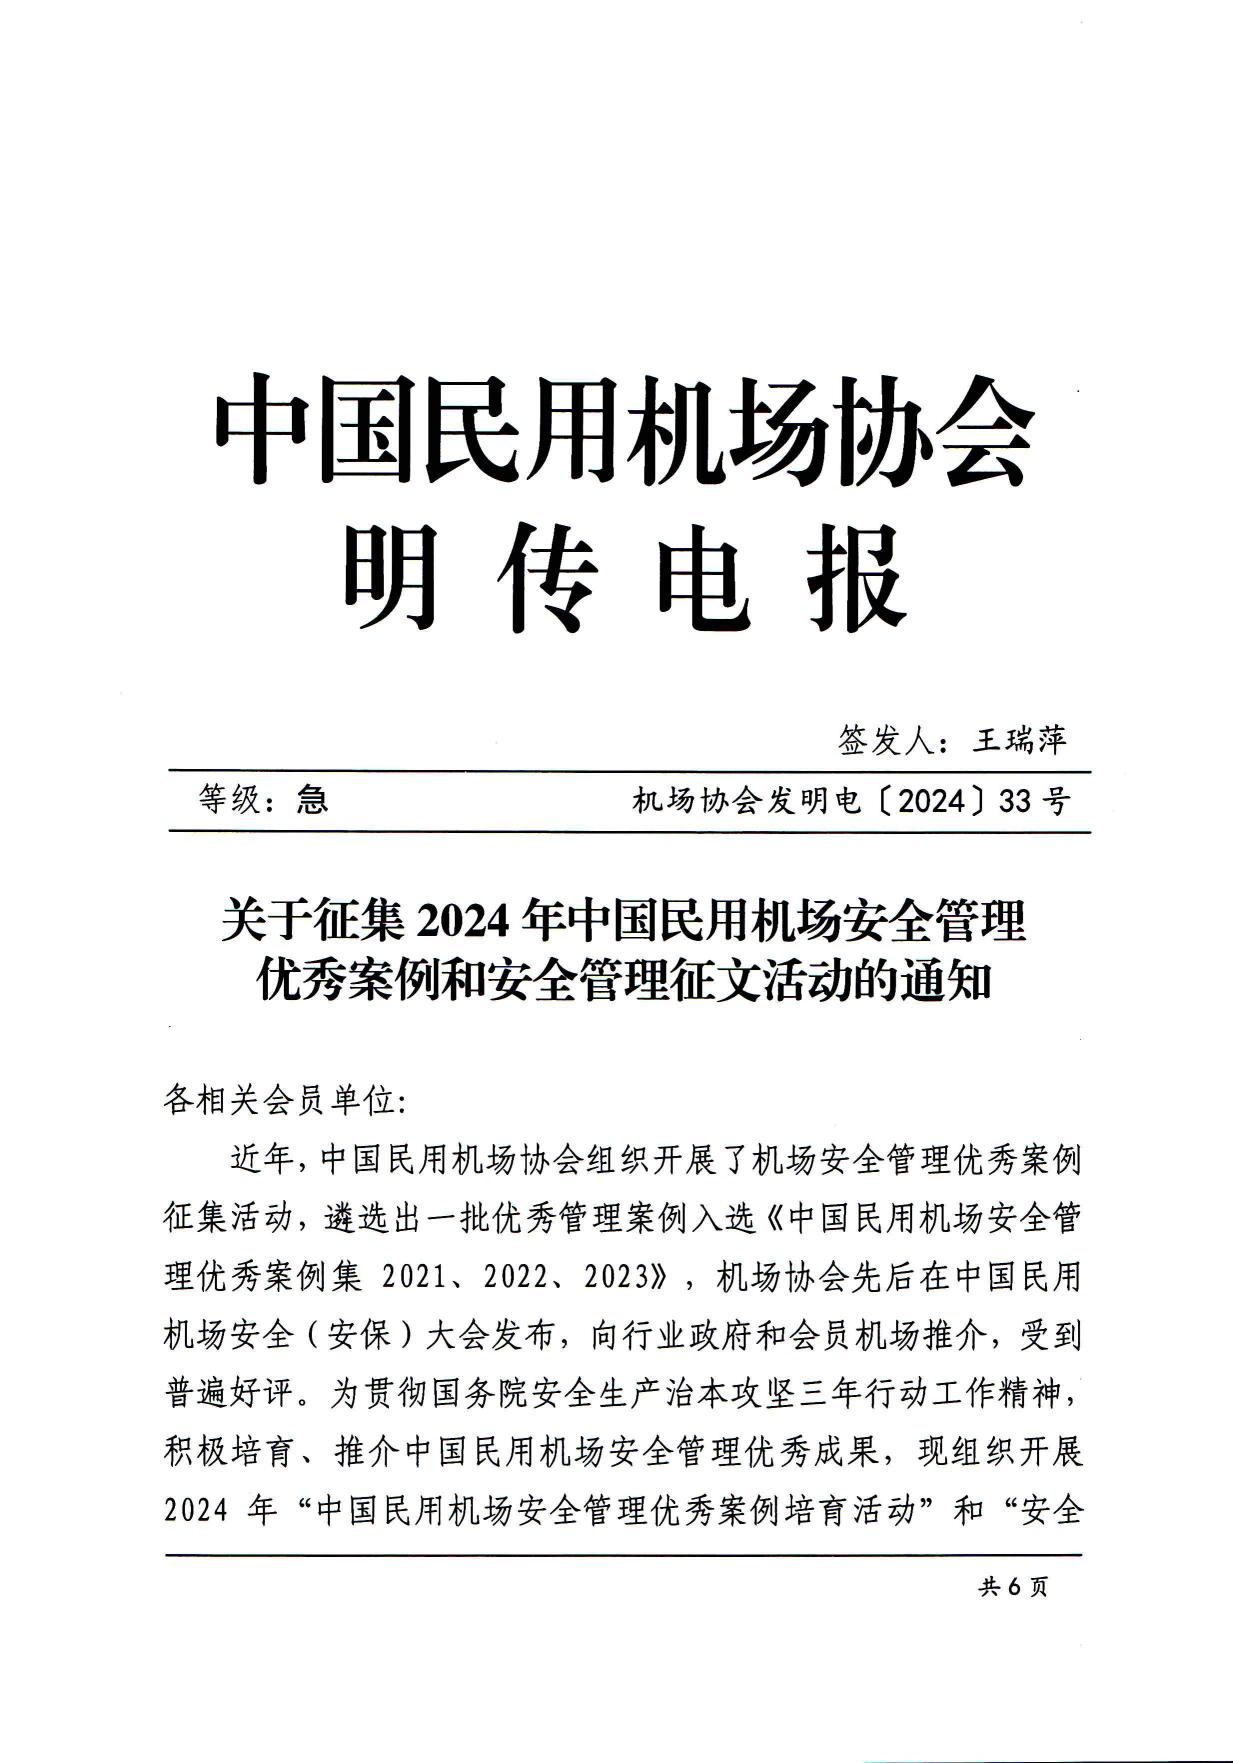 关于征集2024年中国民用机场安全管理优秀案例和安全管理征文活动的通知_page1.jpg